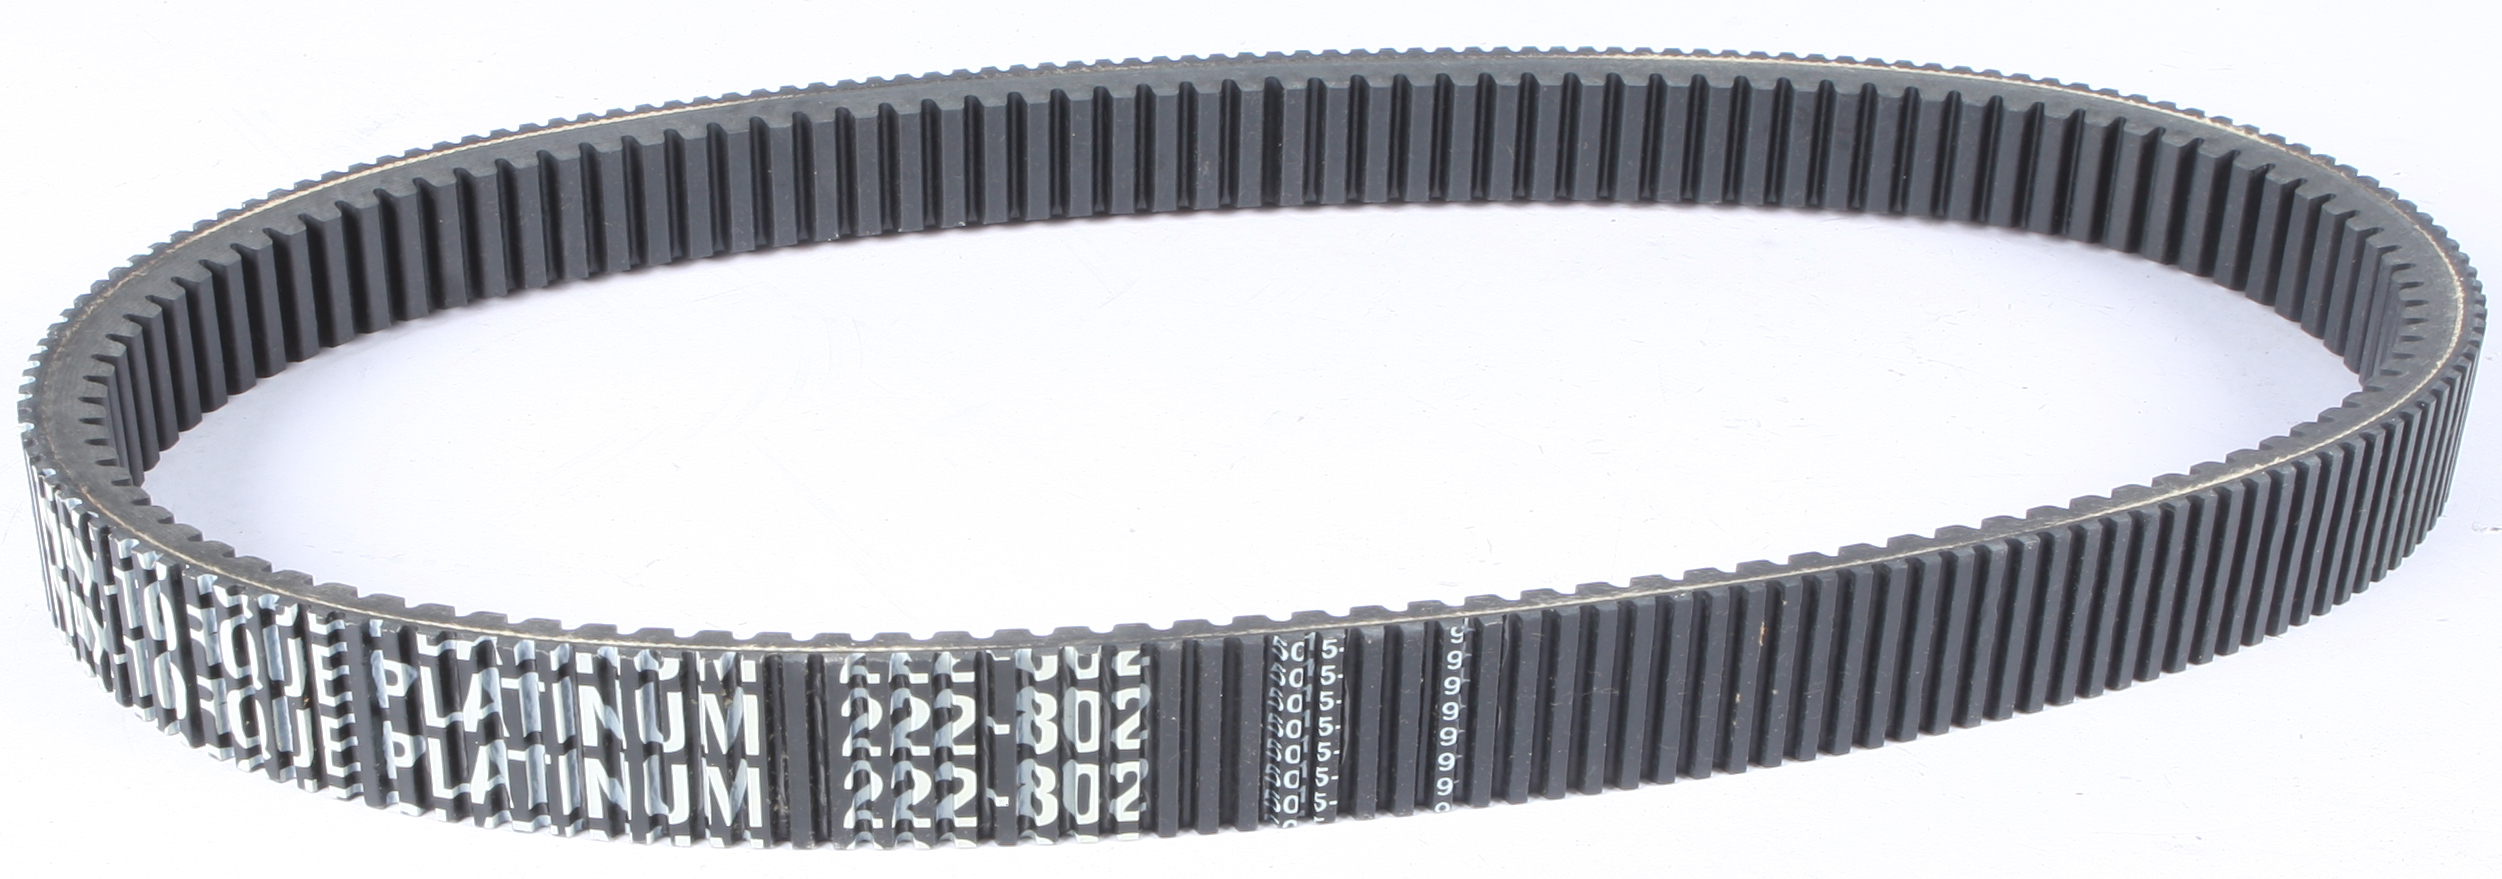 Sp1 - Max-torque Platinum Belt 47 7/8" X 1 7/16" - 47-3274